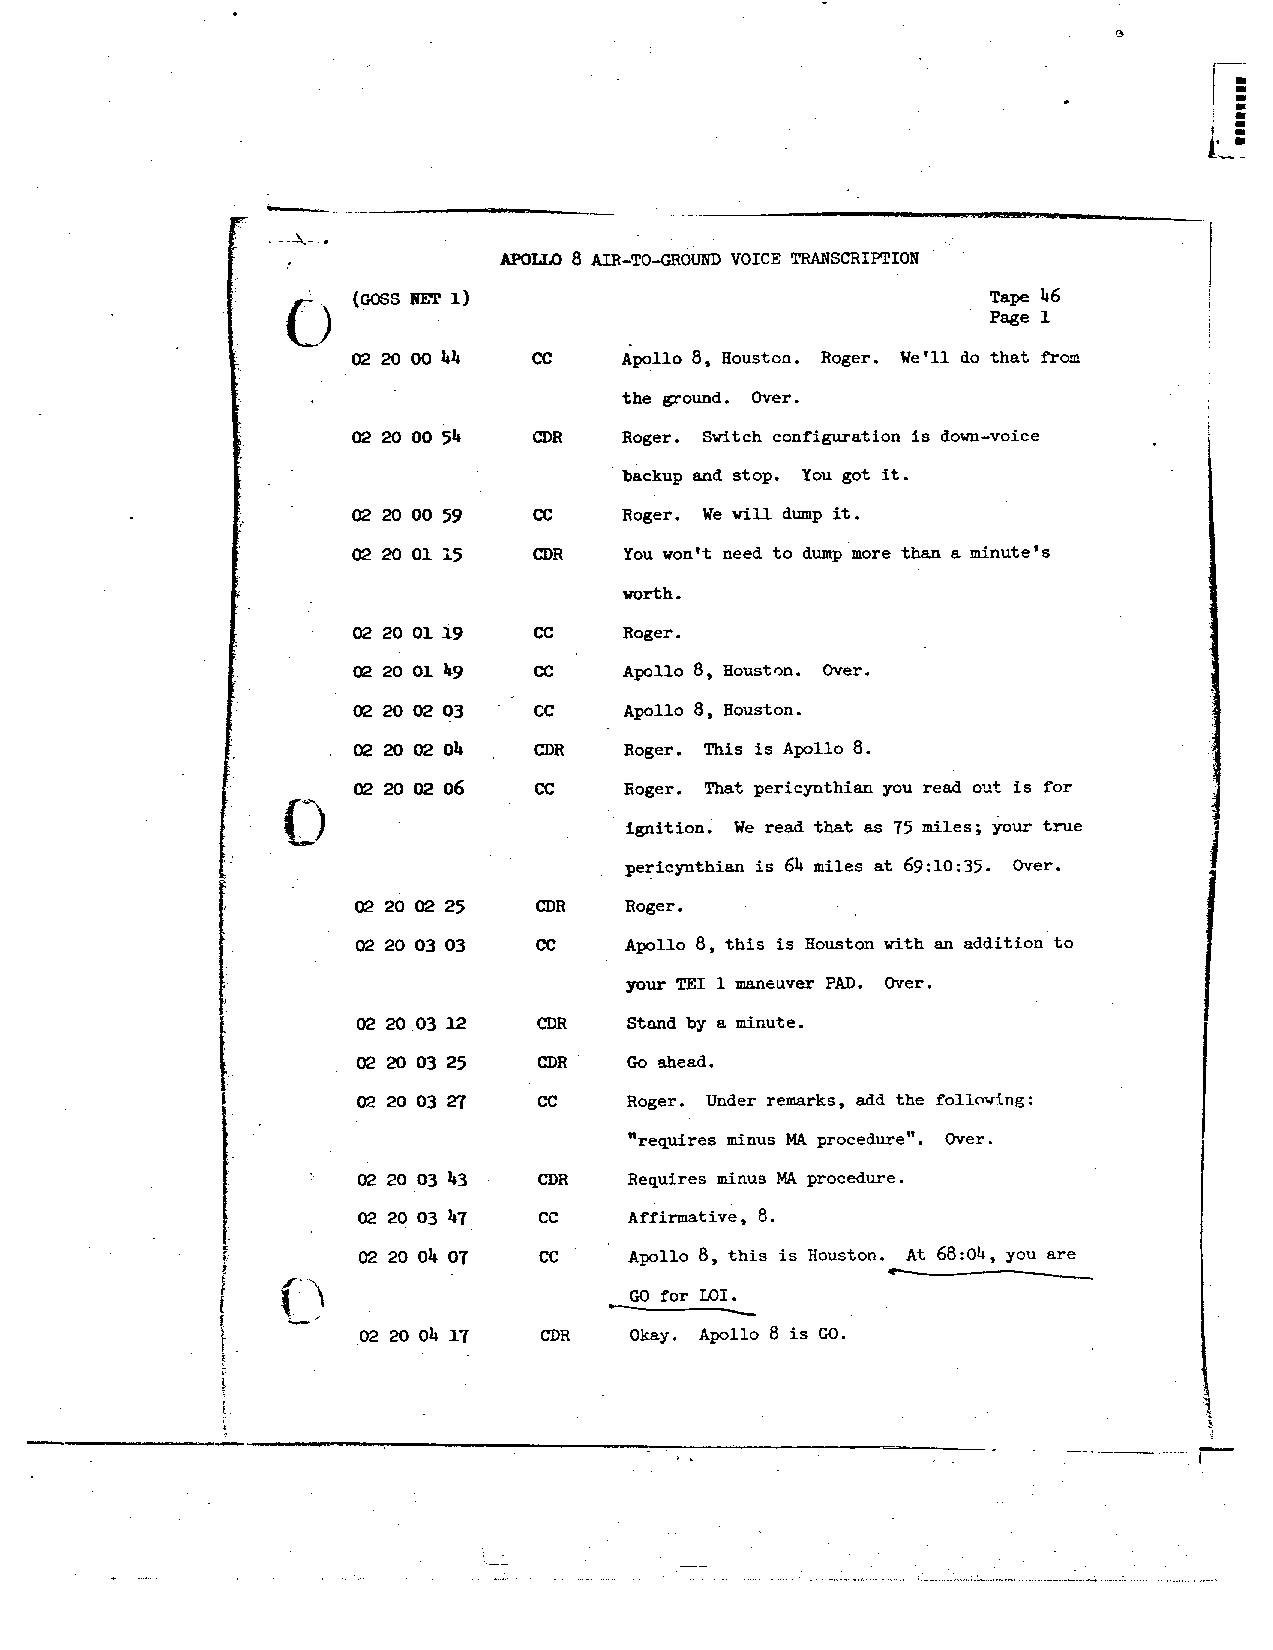 Page 353 of Apollo 8’s original transcript